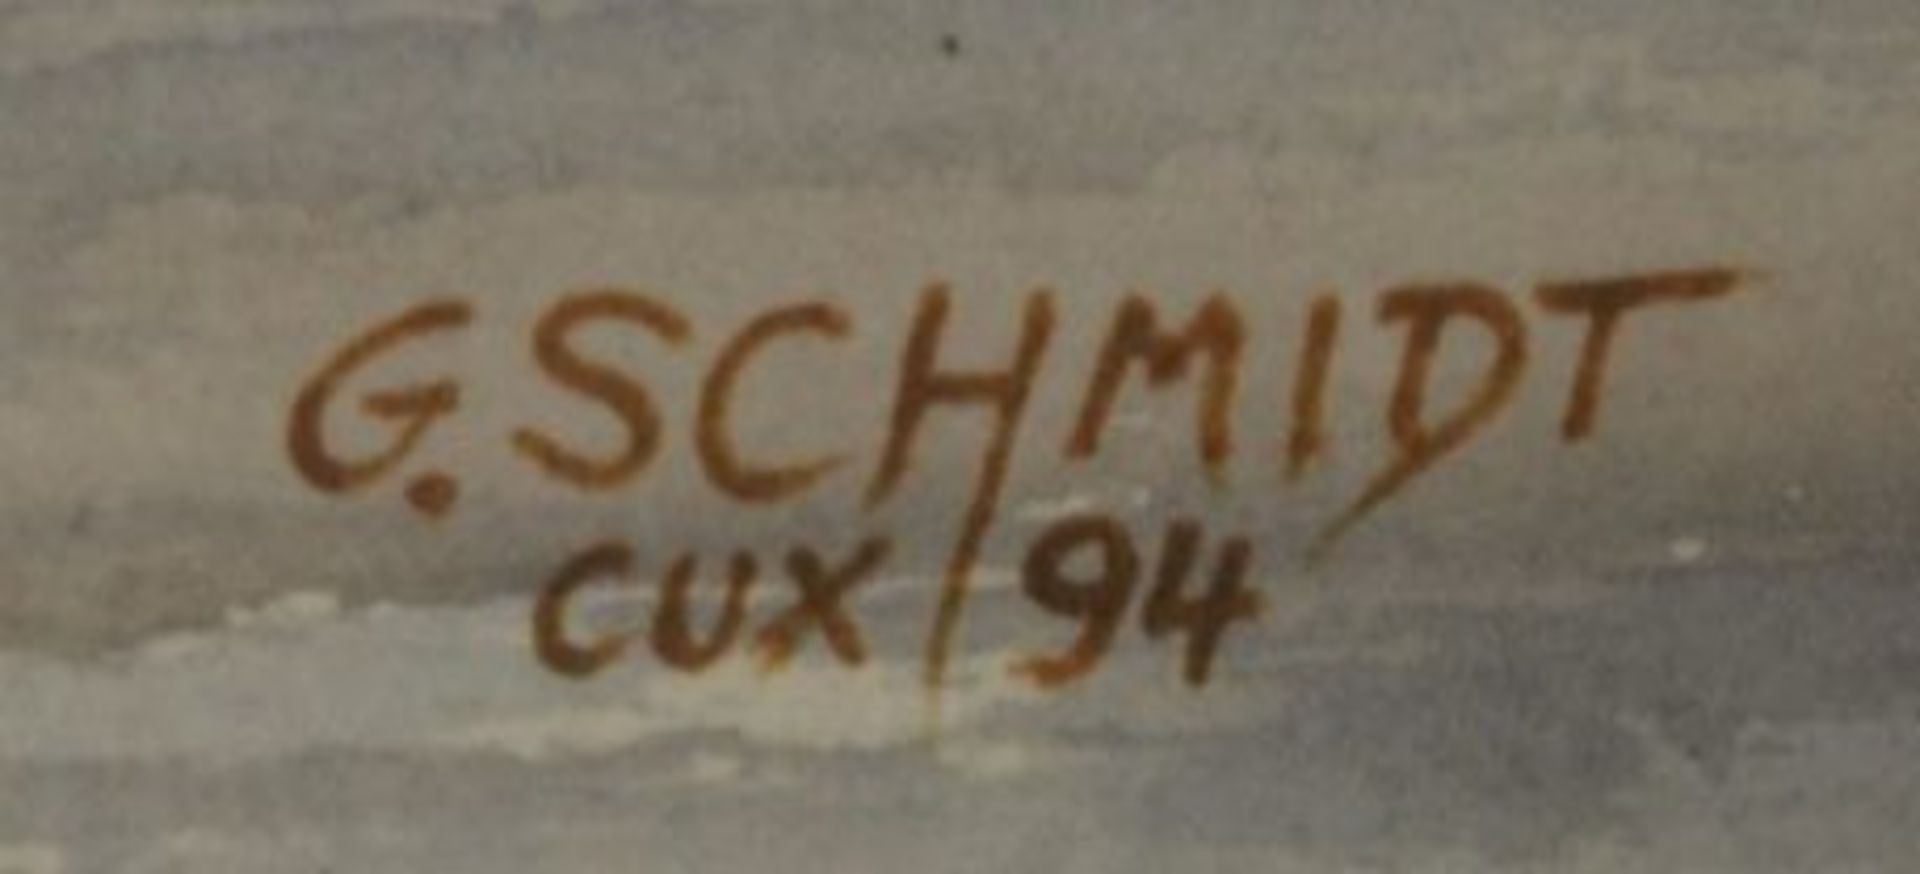 G.Schmidt '94, Cuxhaven, Fischkutter, Aquarell, gerahmt/Glas, RG 43 x 53cm. - Bild 2 aus 3